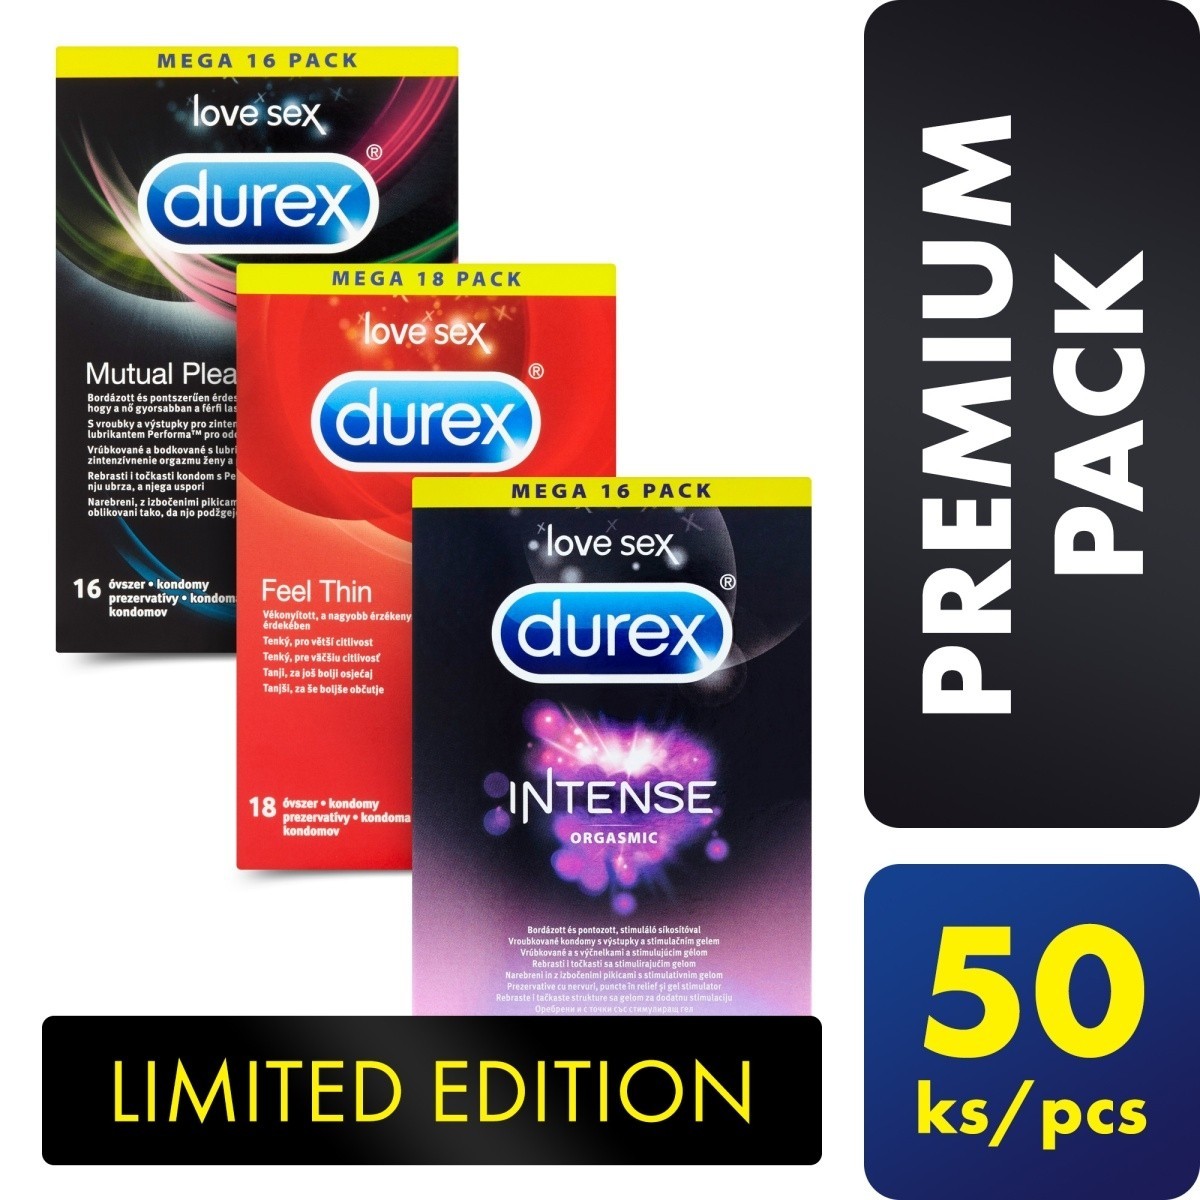 Durex Premium Pack